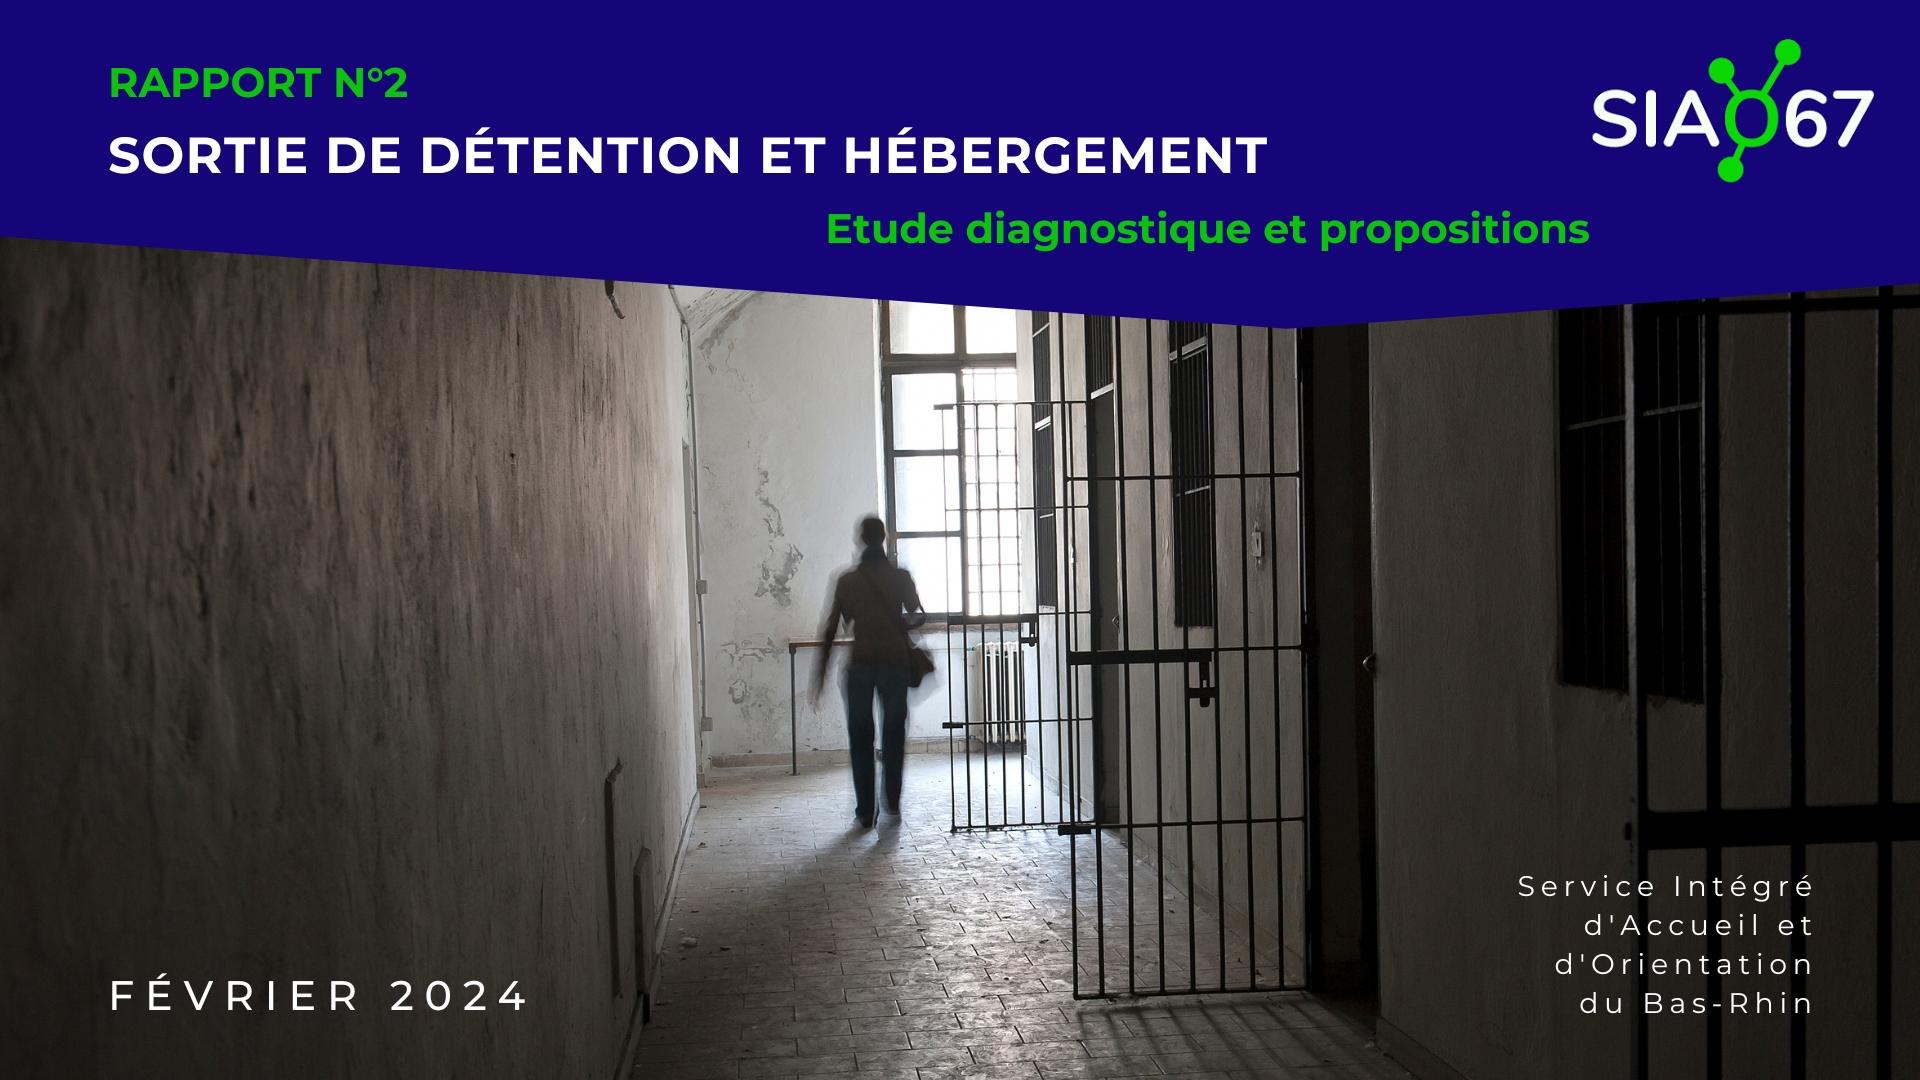 You are currently viewing Rapport : Sortie de détention et hébergement